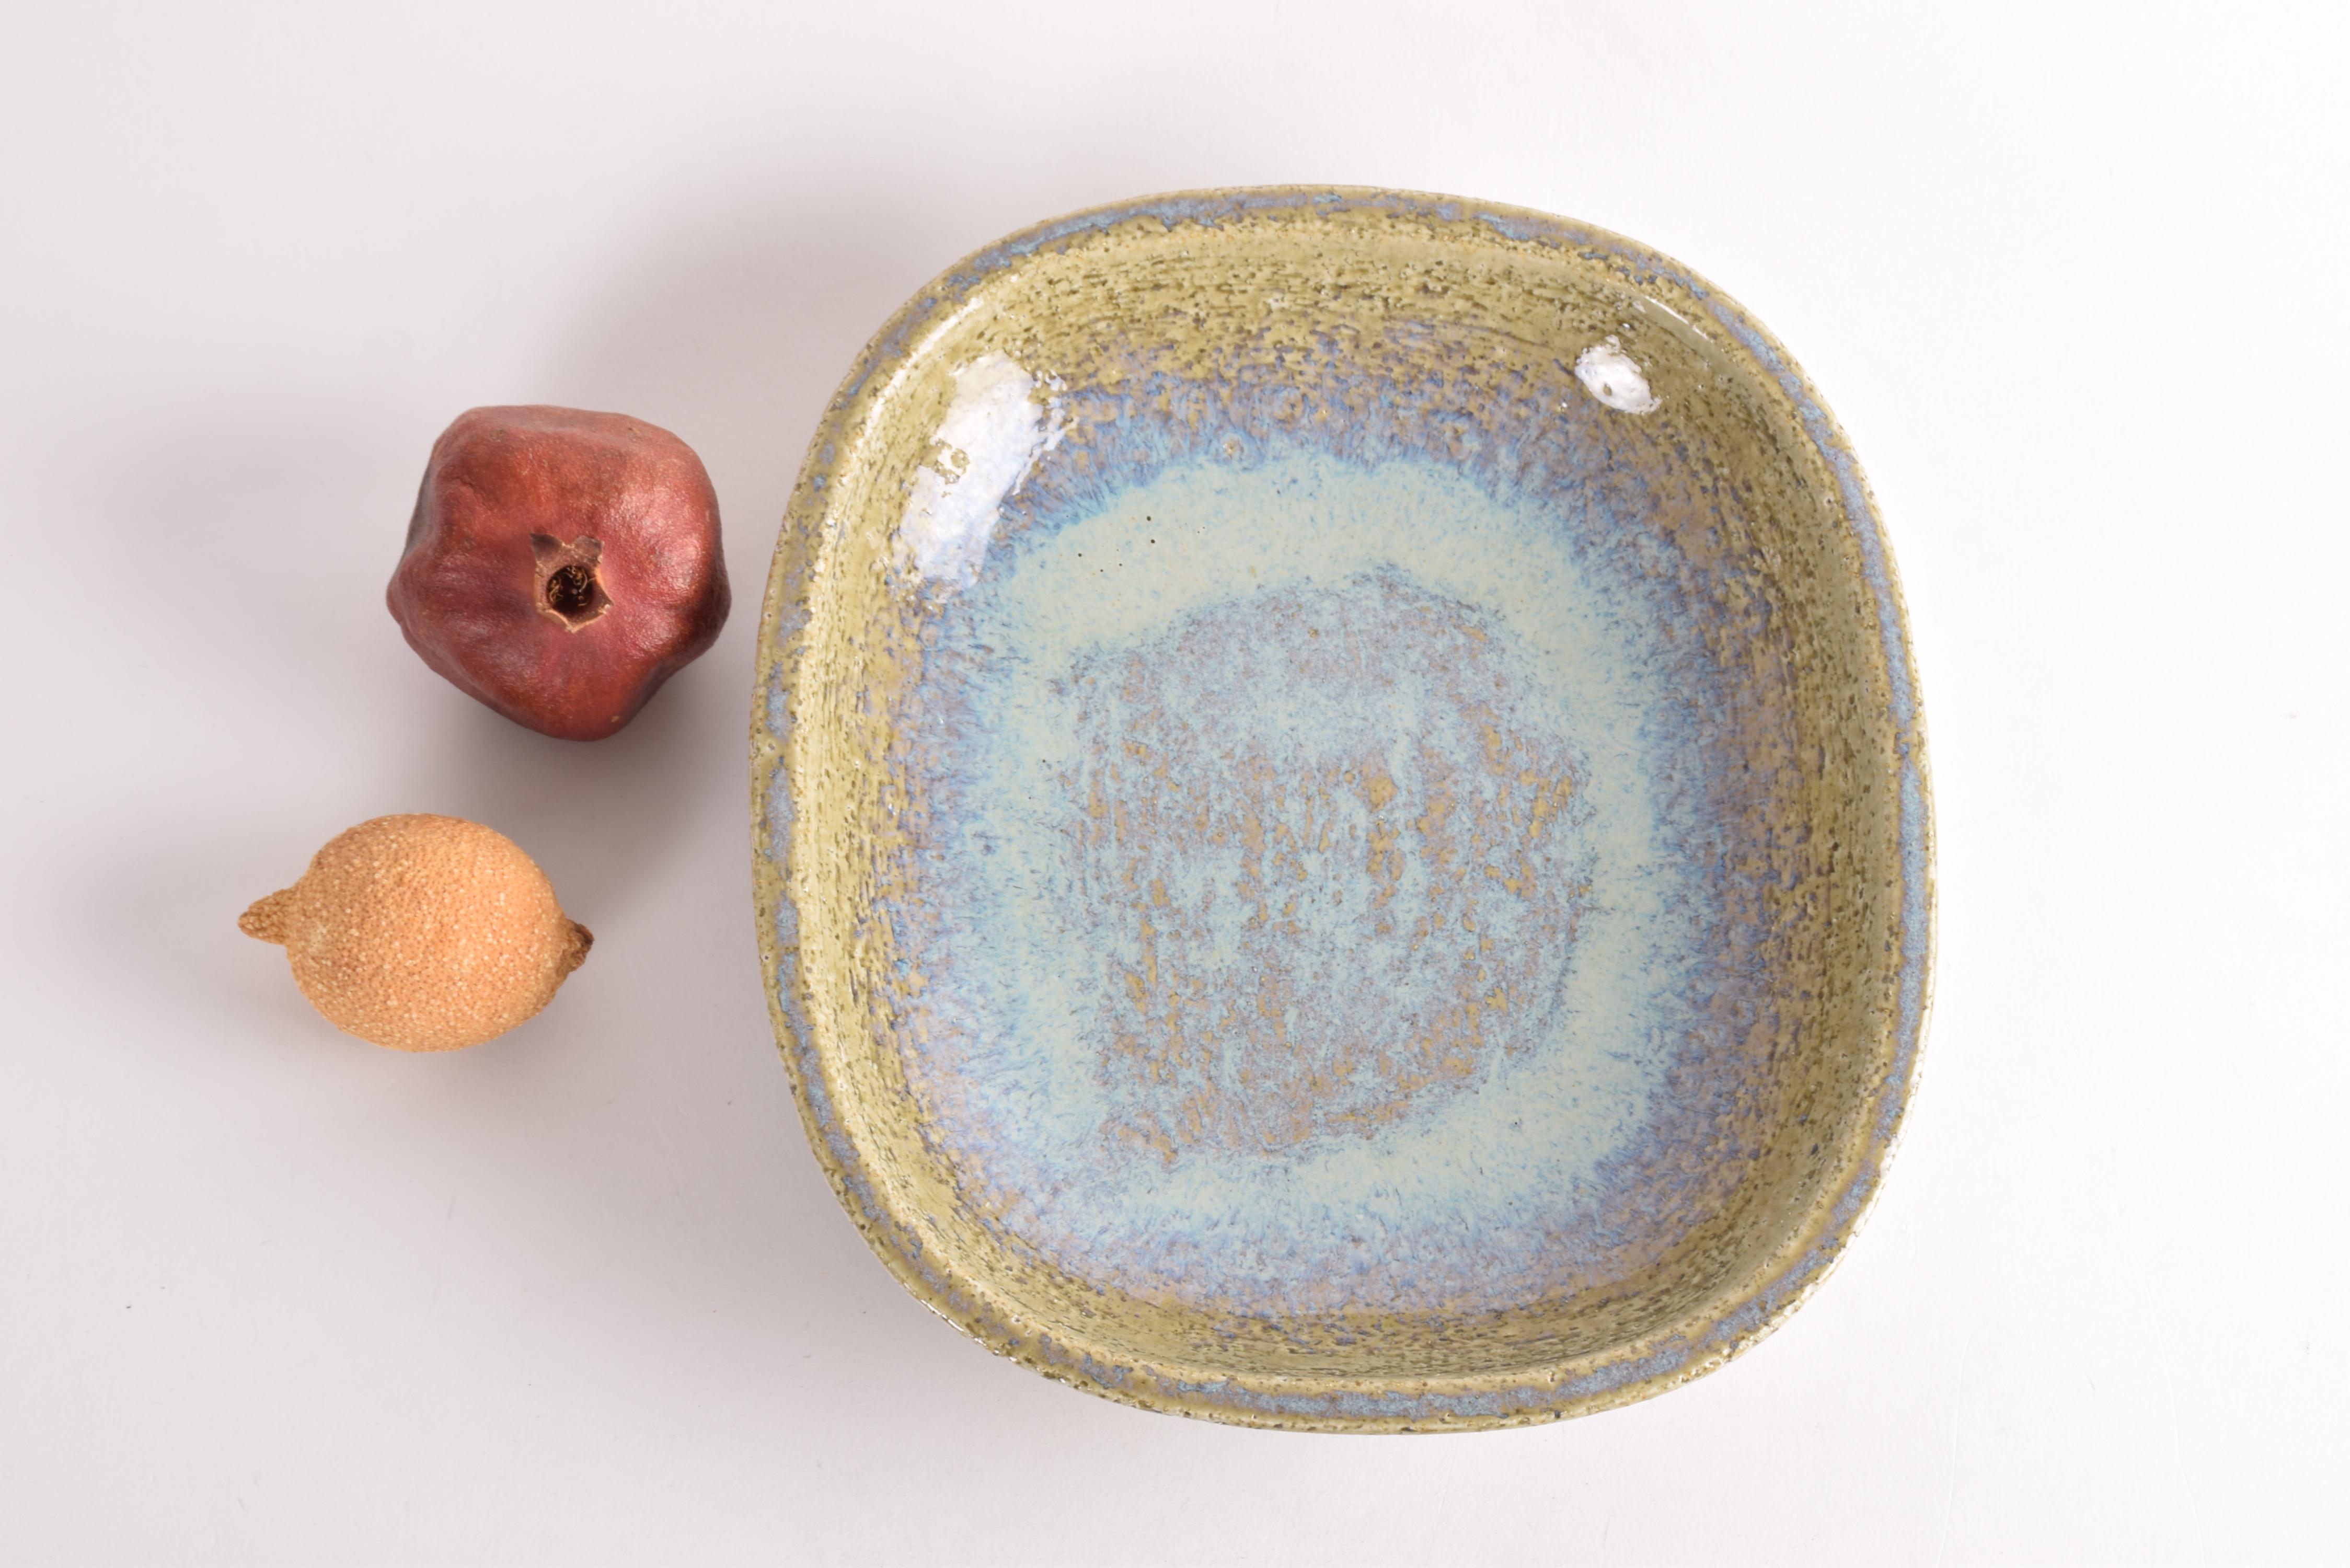 Mid-Century Modern Palshus Large Flat Ceramic Bowl Green Blue by Per Linnemann-Schmidt Danish 1960s